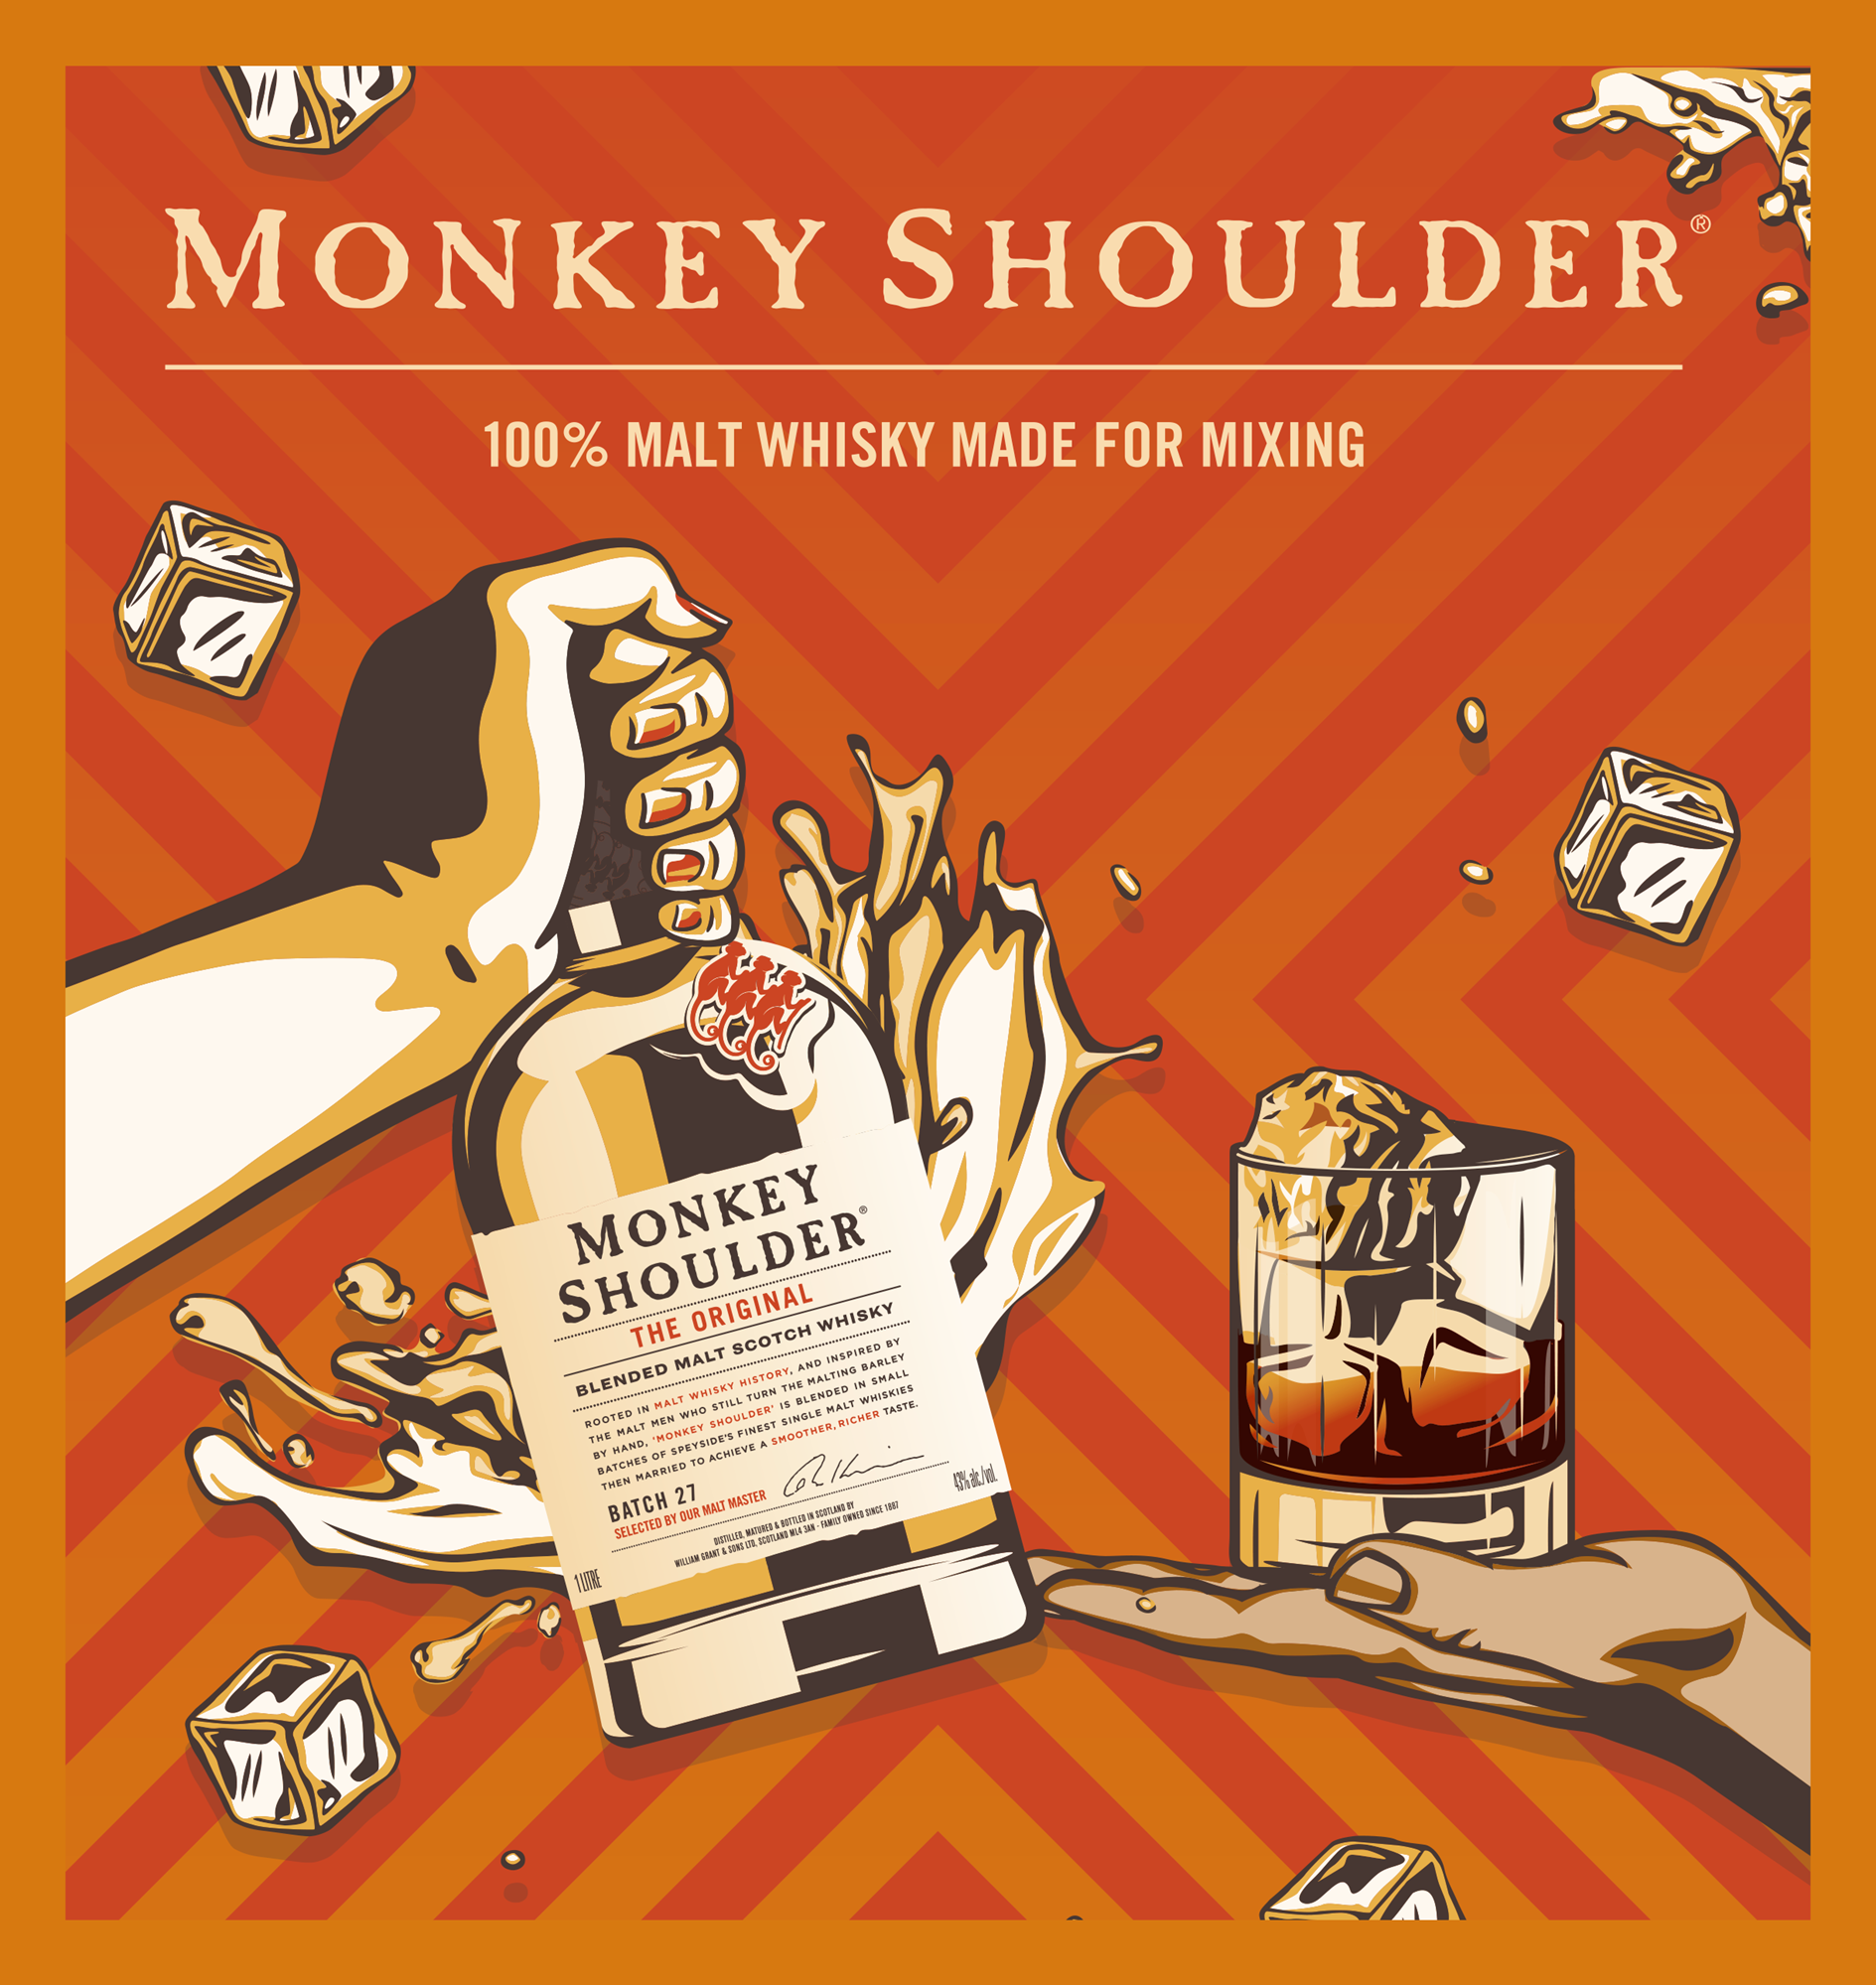 Monkey Shoulder viski jäillä tarjoiltuna.